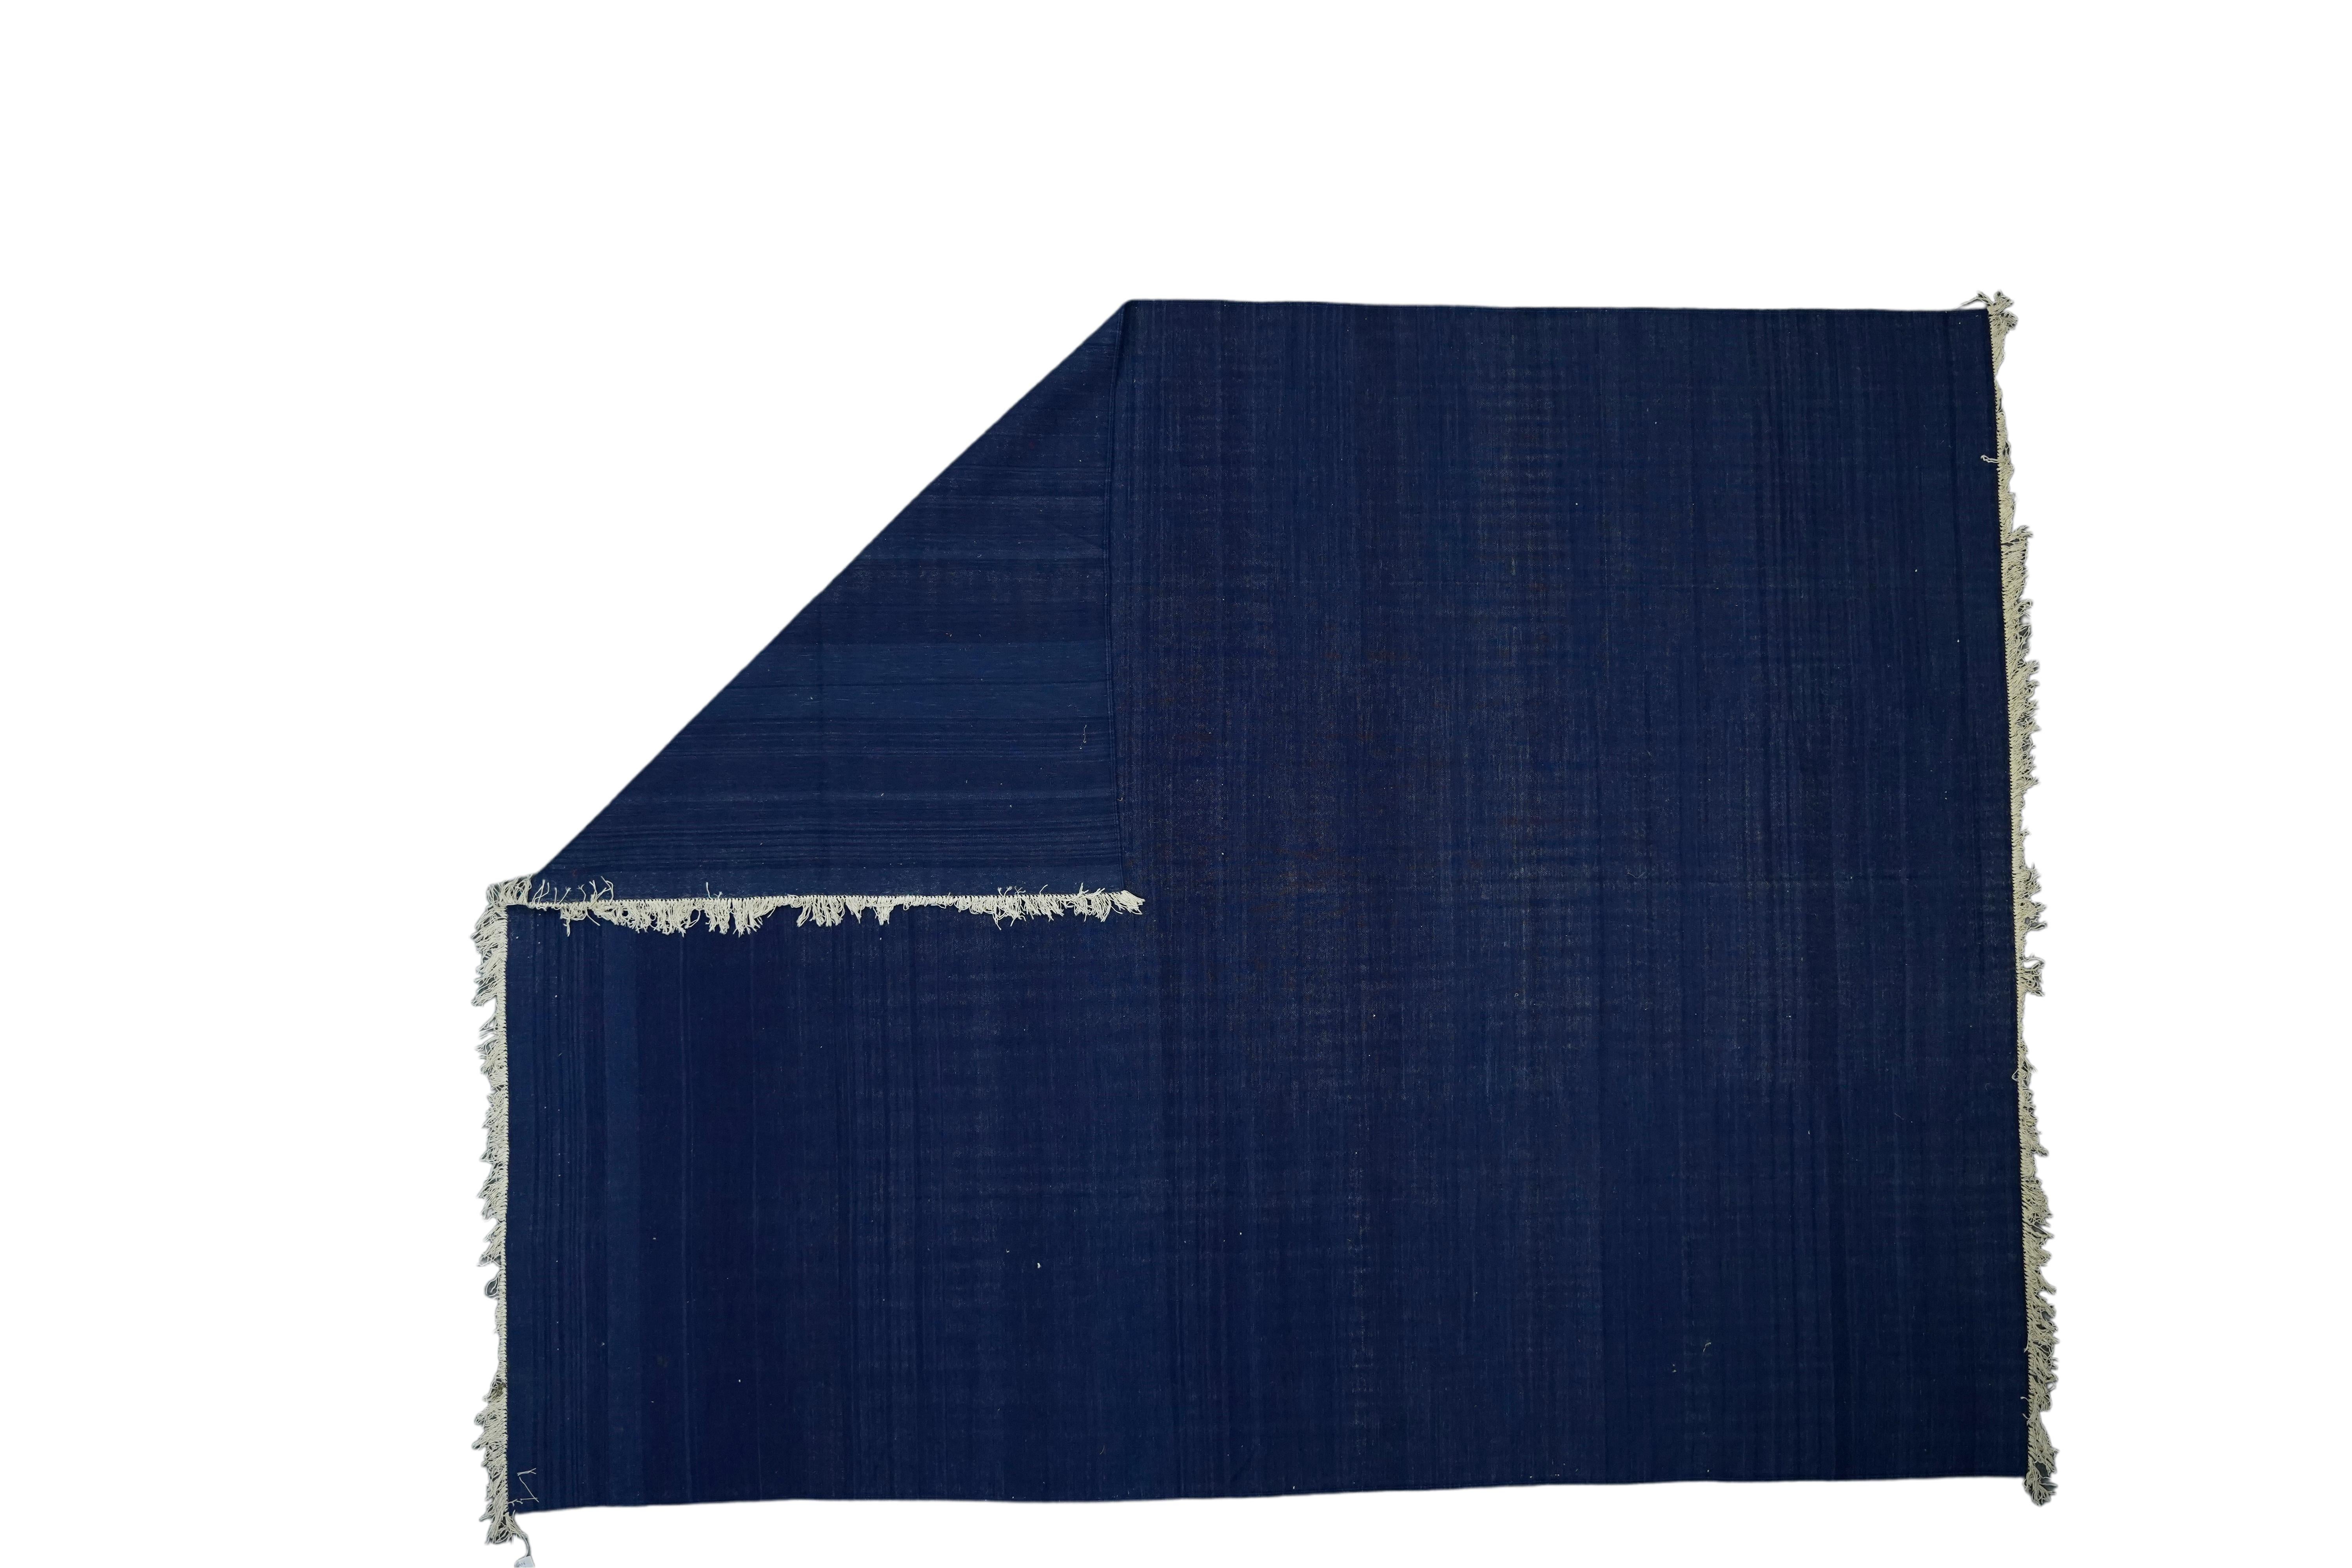 Dieser 9x12 große Teppich ist ein seltener Vintage-Dhurrie-Teppich aus einer aufregenden neuen Kuration von Rug &New Kilim aus der Mitte des Jahrhunderts. Das handgewebte Flachgewebe aus Wolle stammt aus Indien (ca. 1950-1960) und zeichnet sich